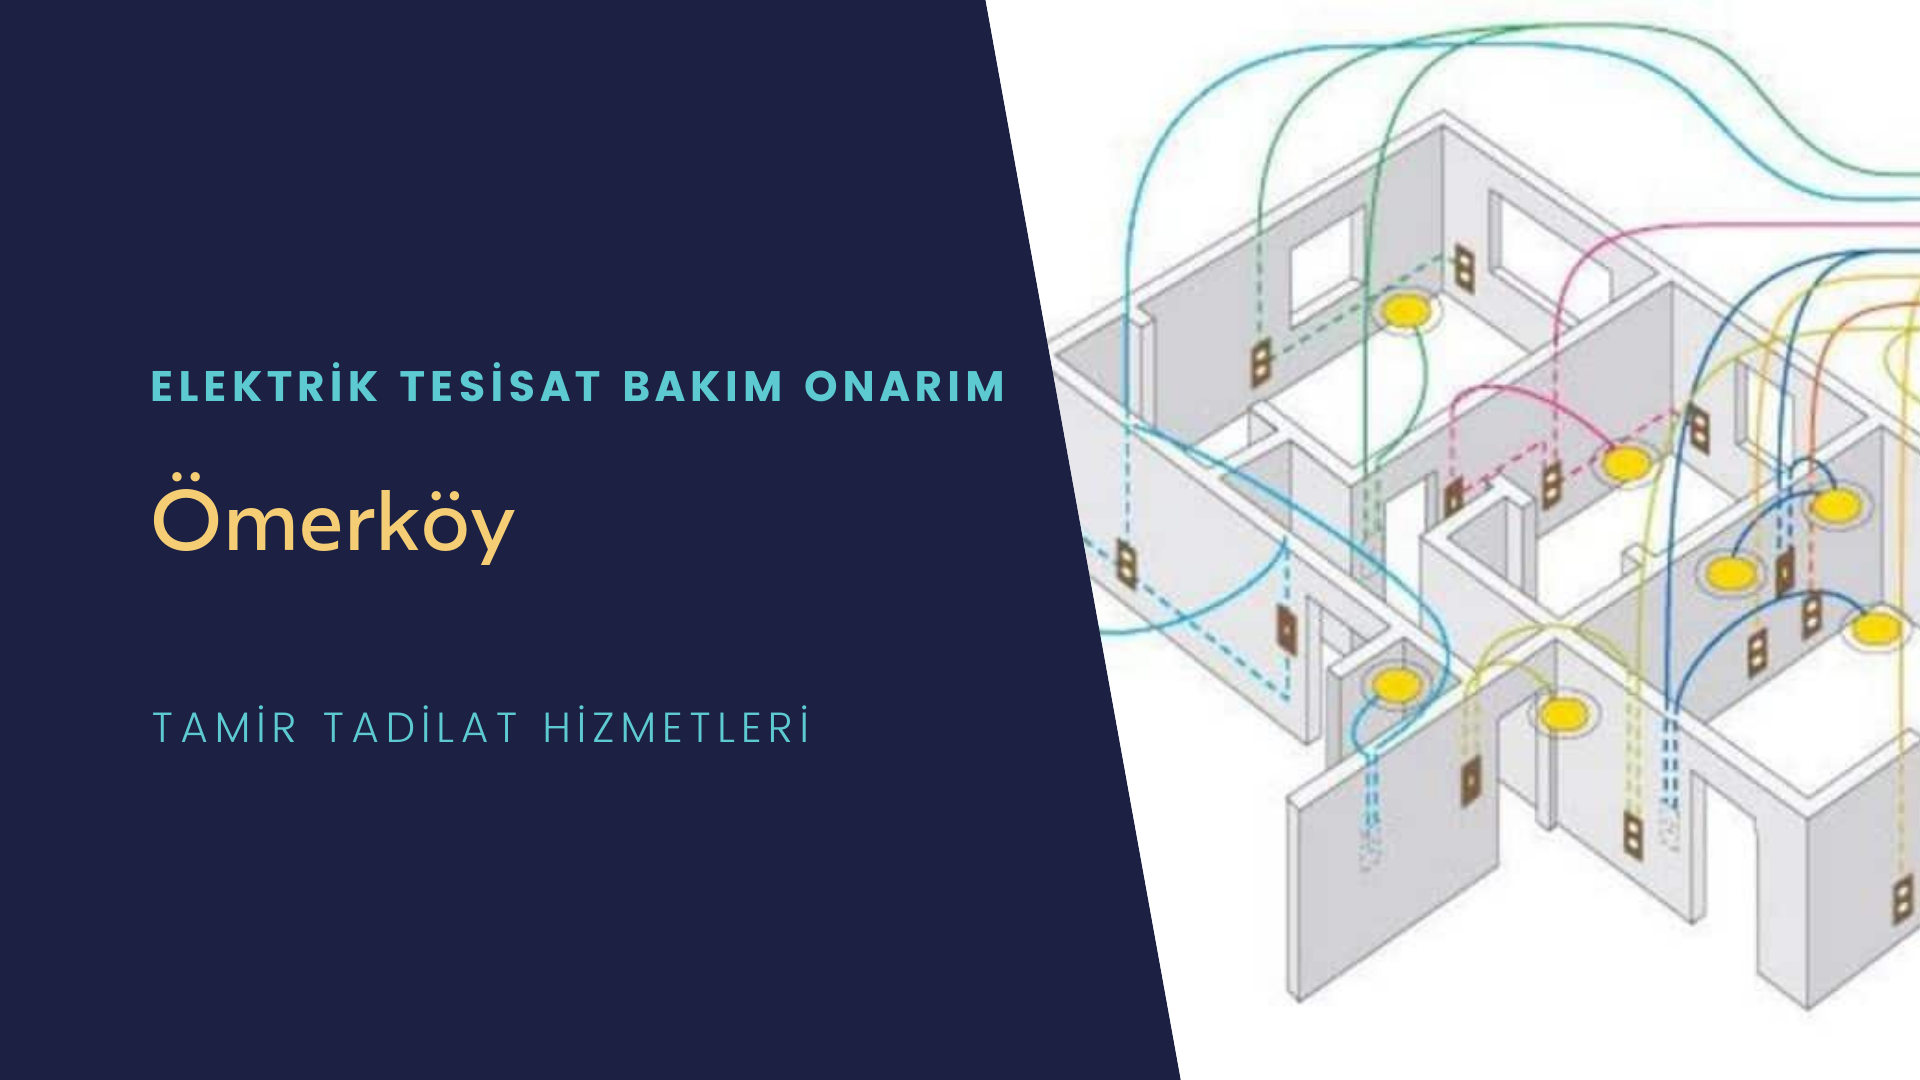 Ömerköy'de elektrik tesisatı ustalarımı arıyorsunuz doğru adrestenizi Ömerköy elektrik tesisatı ustalarımız 7/24 sizlere hizmet vermekten mutluluk duyar.